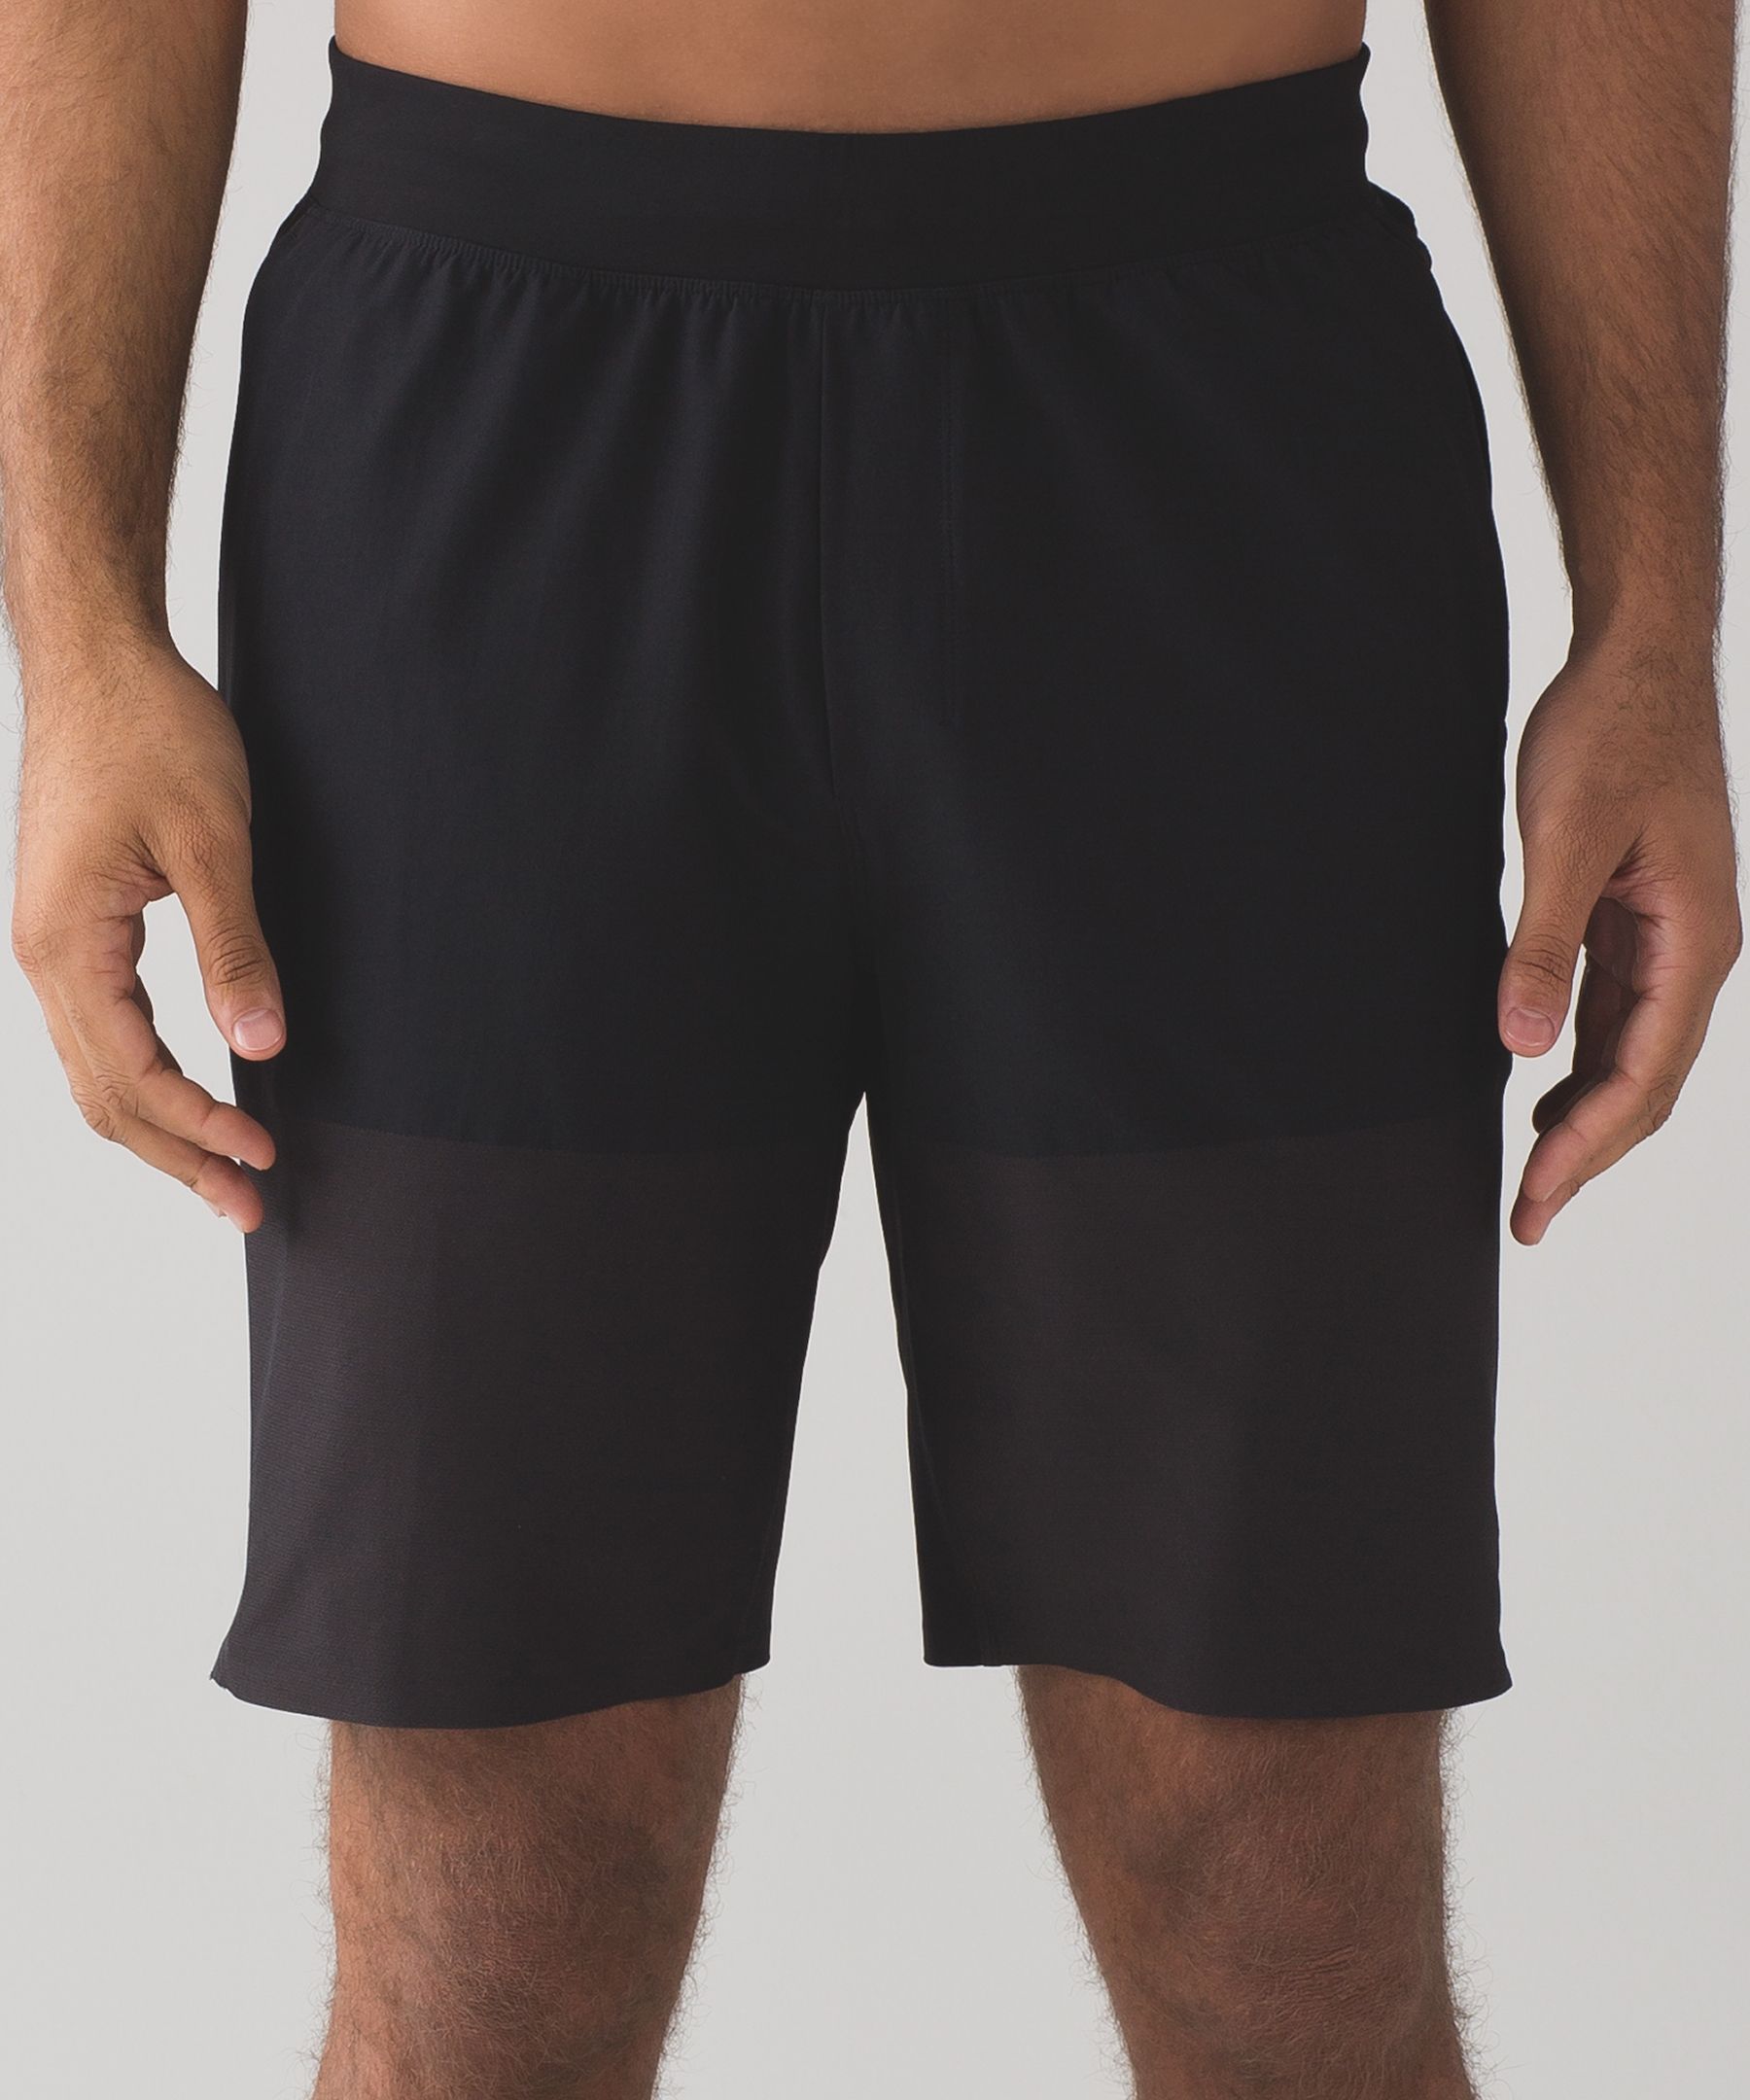 Grind Down Short | Men's Shorts | lululemon athletica